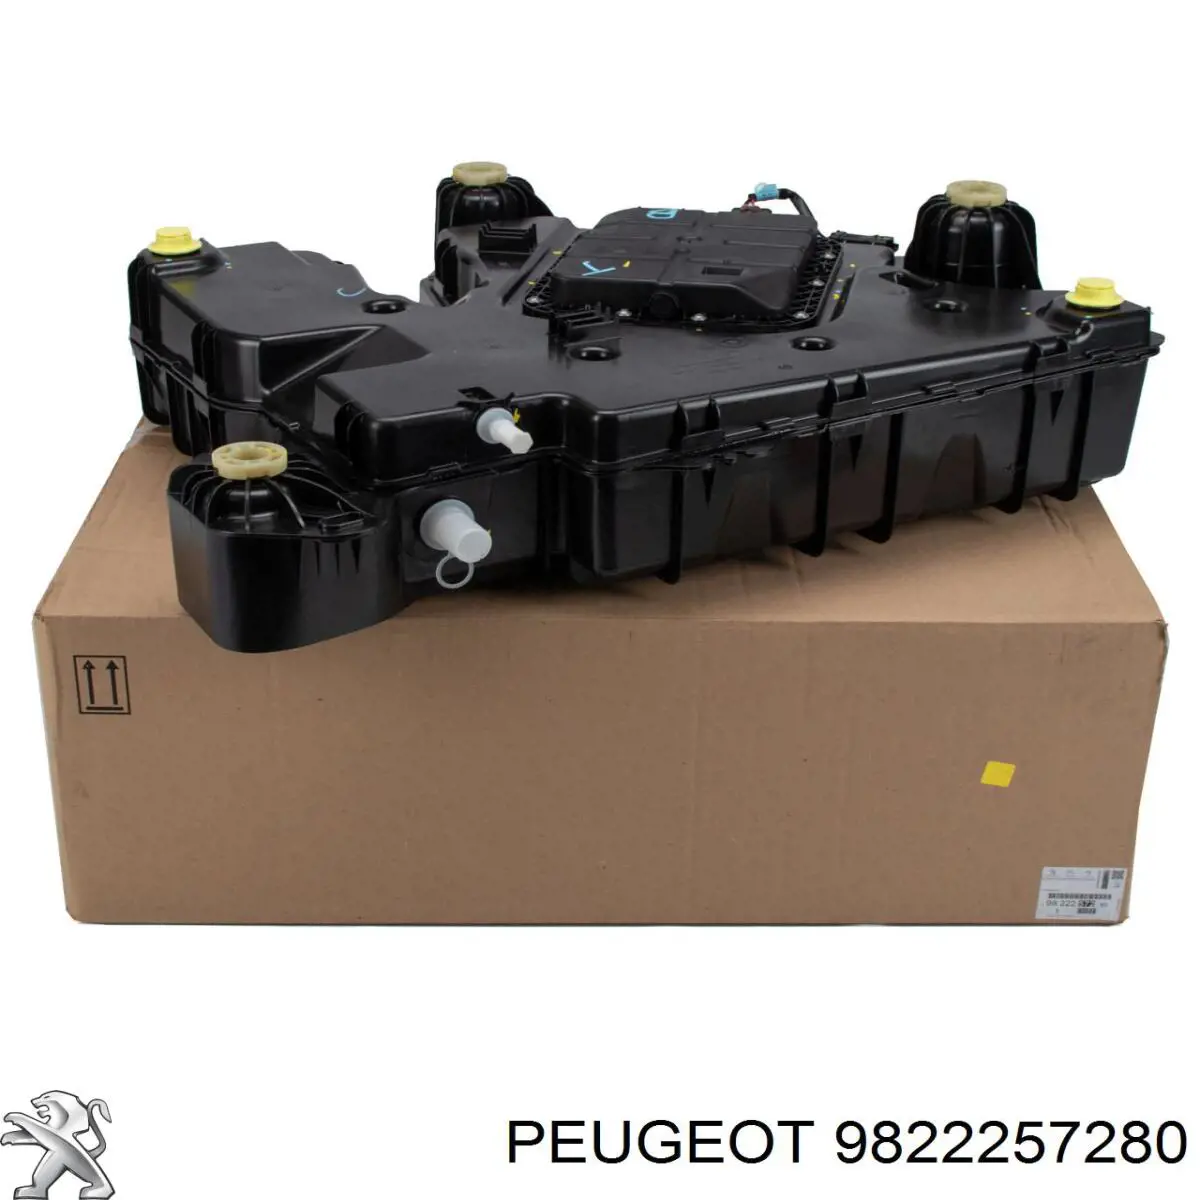 9822257280 Peugeot/Citroen depósito de adblue